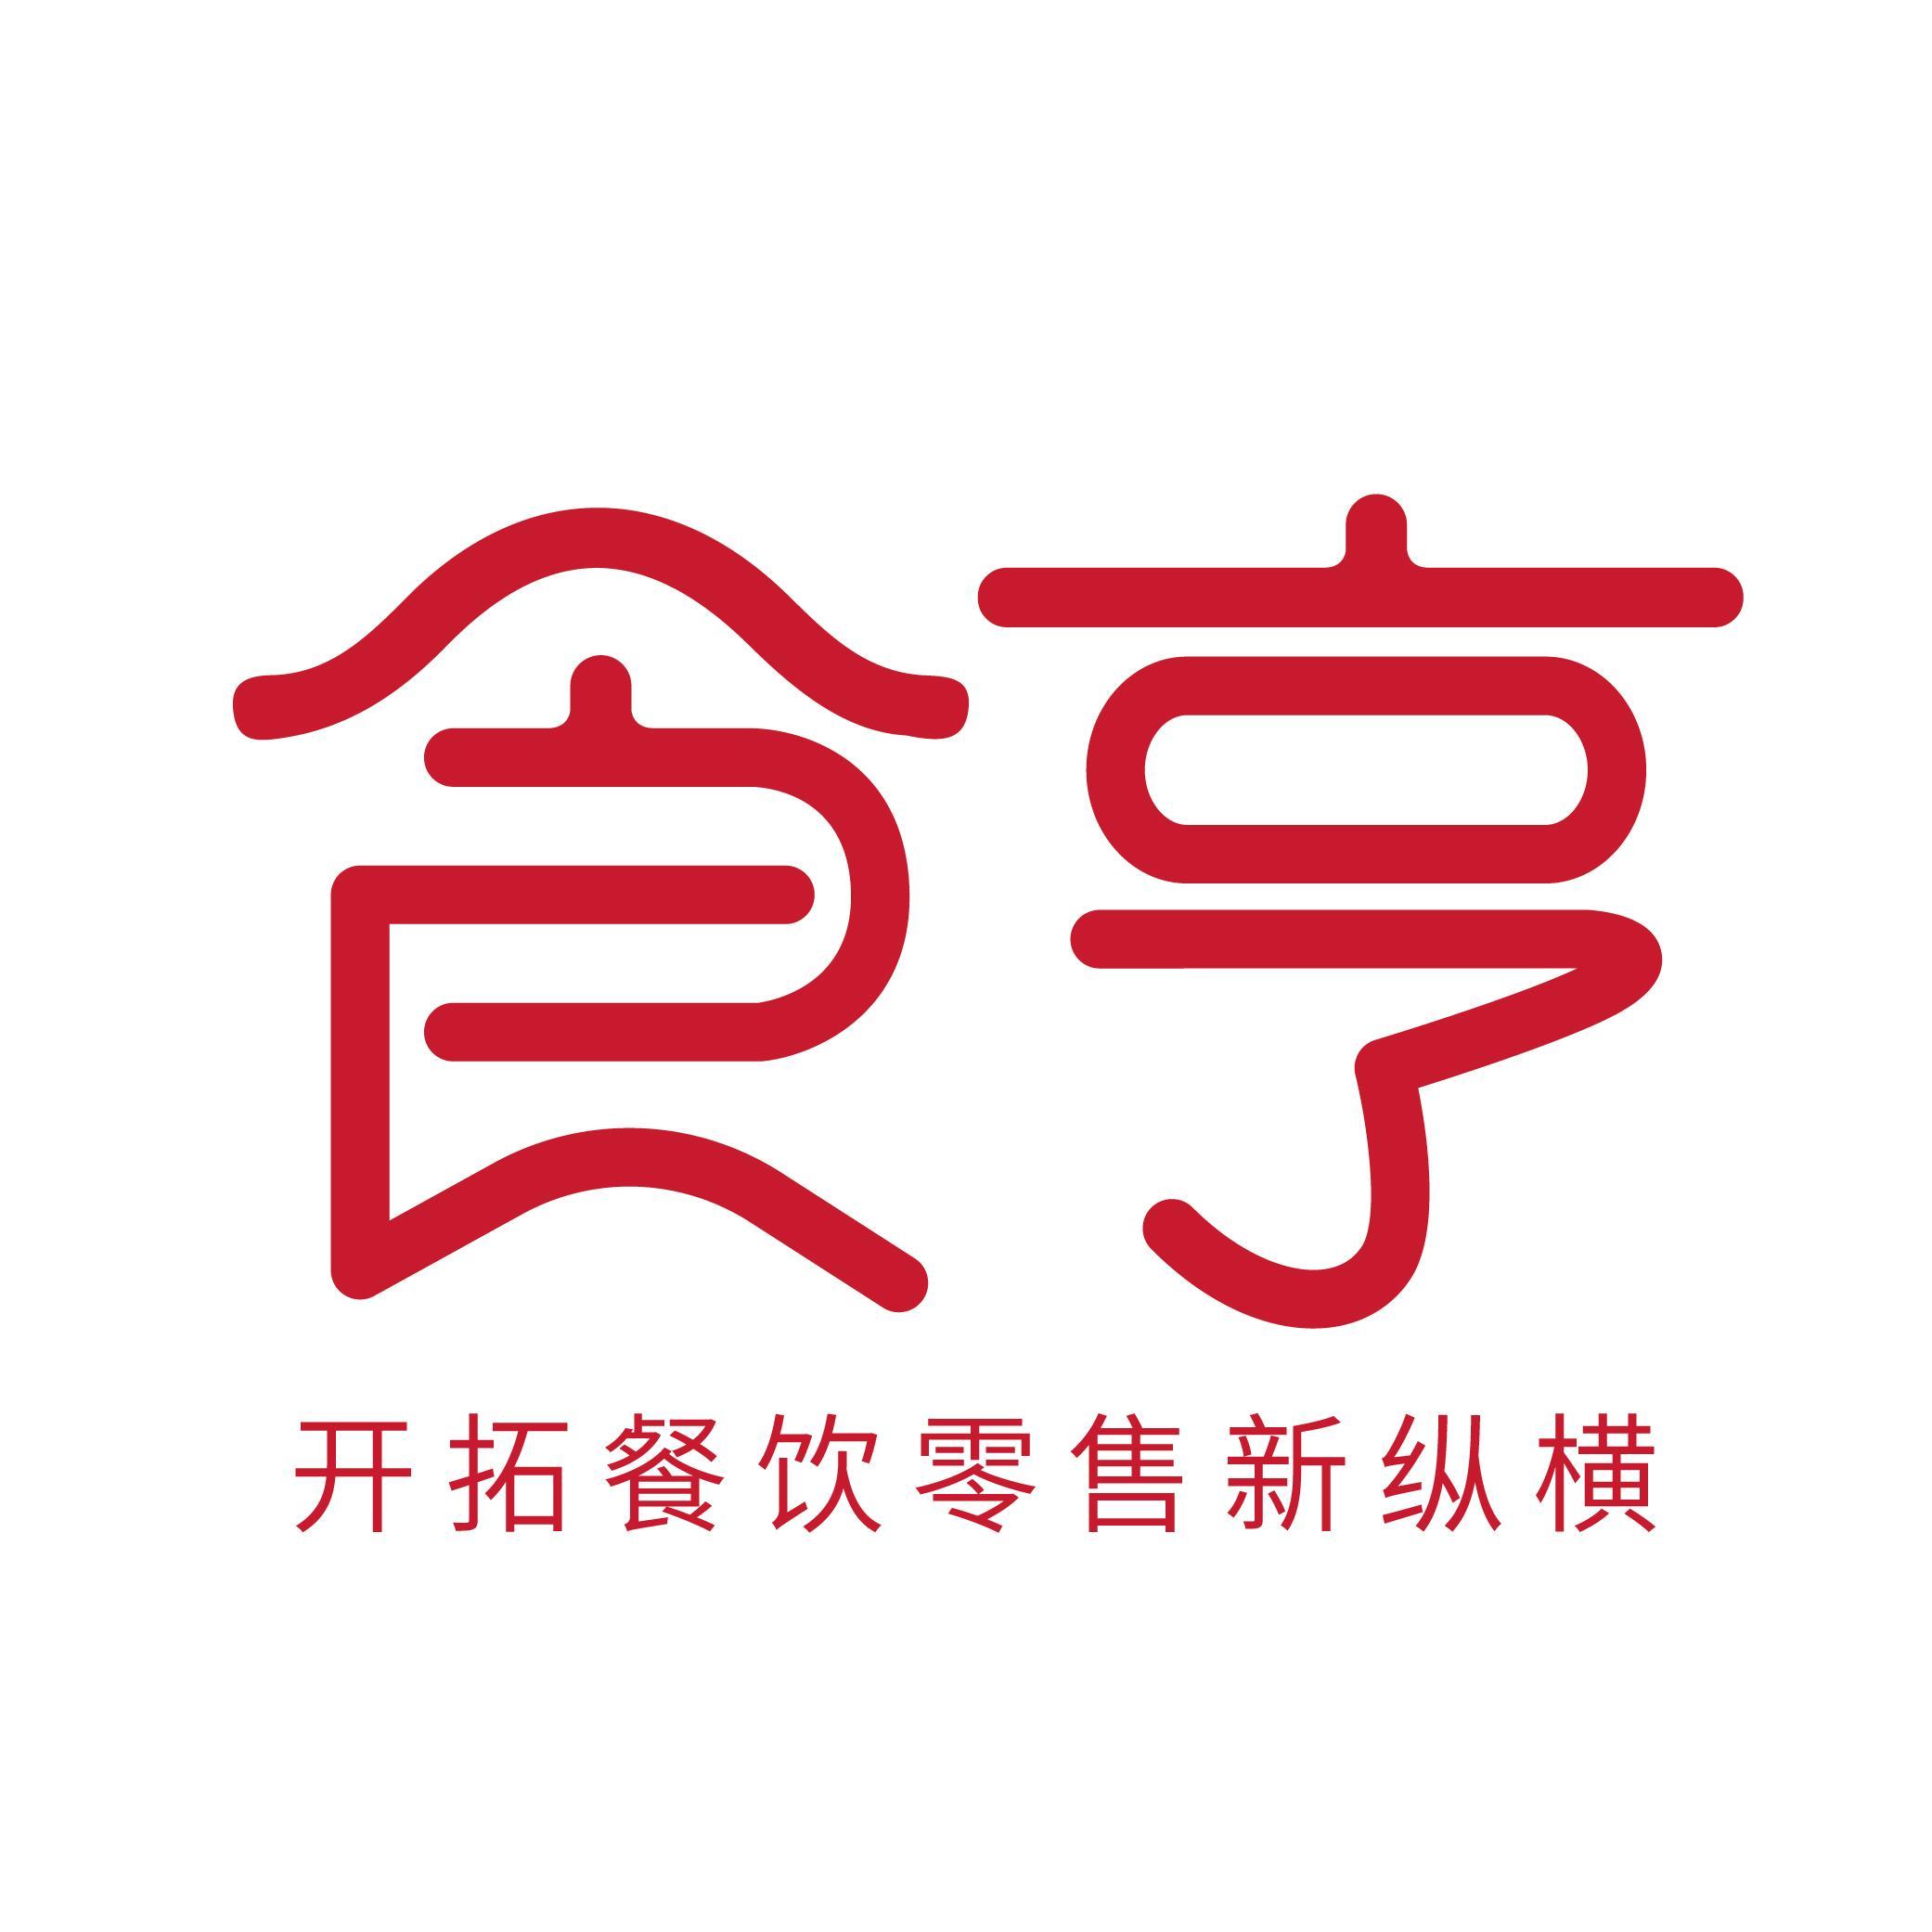 上海十大知名日本料理 加盟品牌推荐_餐饮加盟网